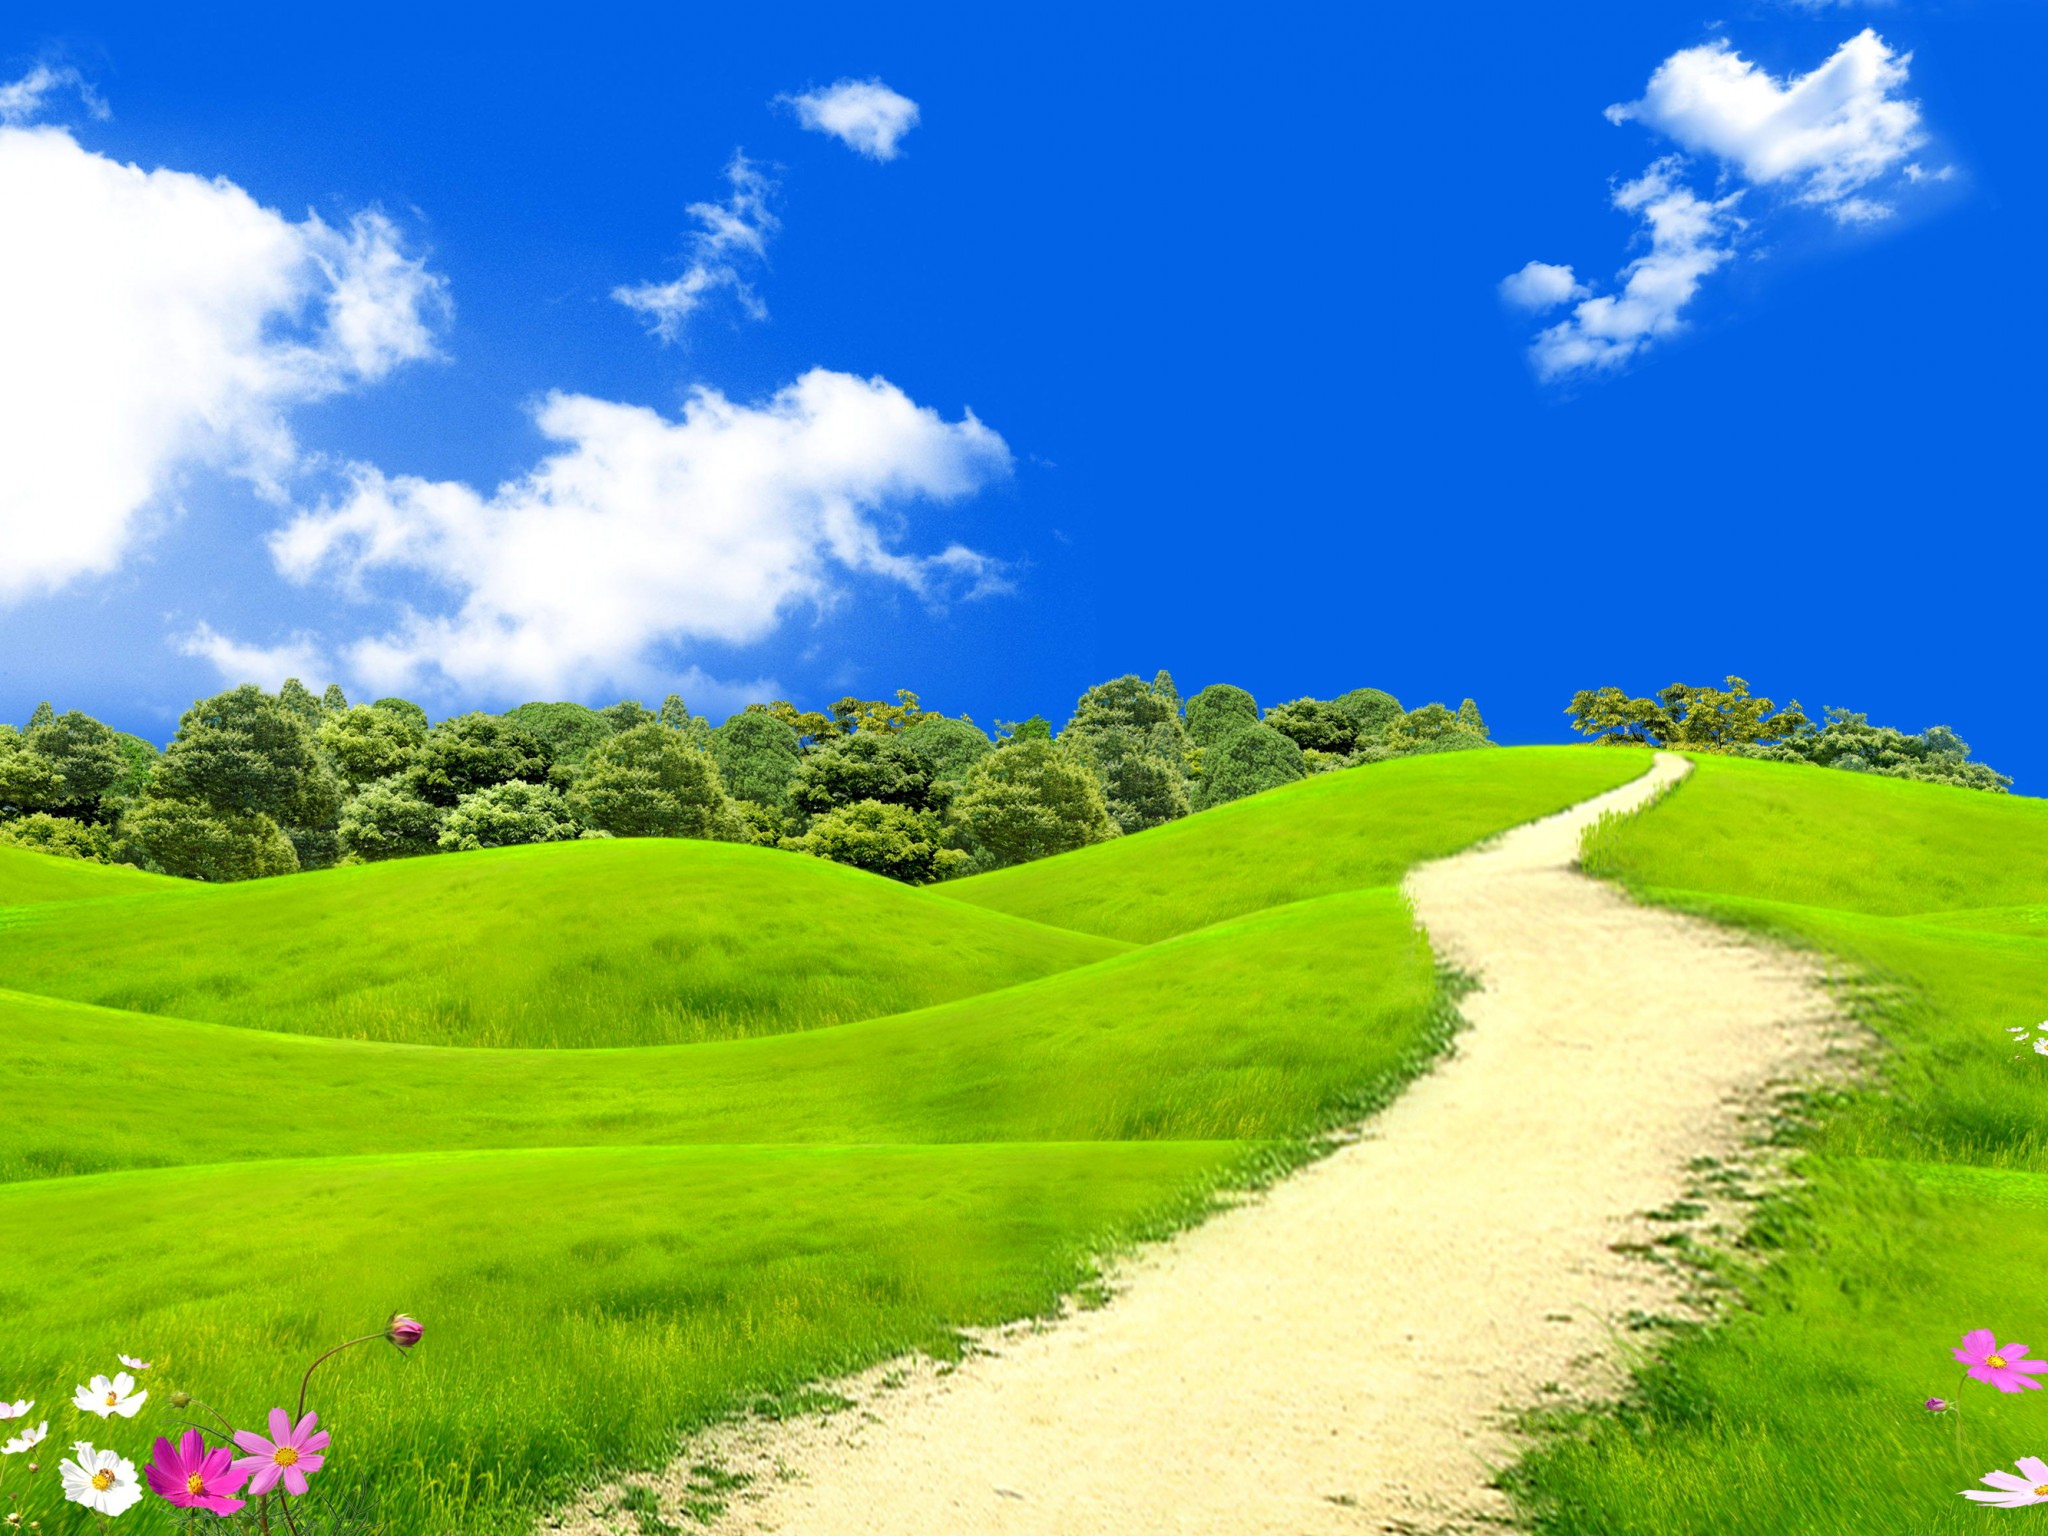 green landscape wallpaper,natural landscape,nature,people in nature,sky,grassland